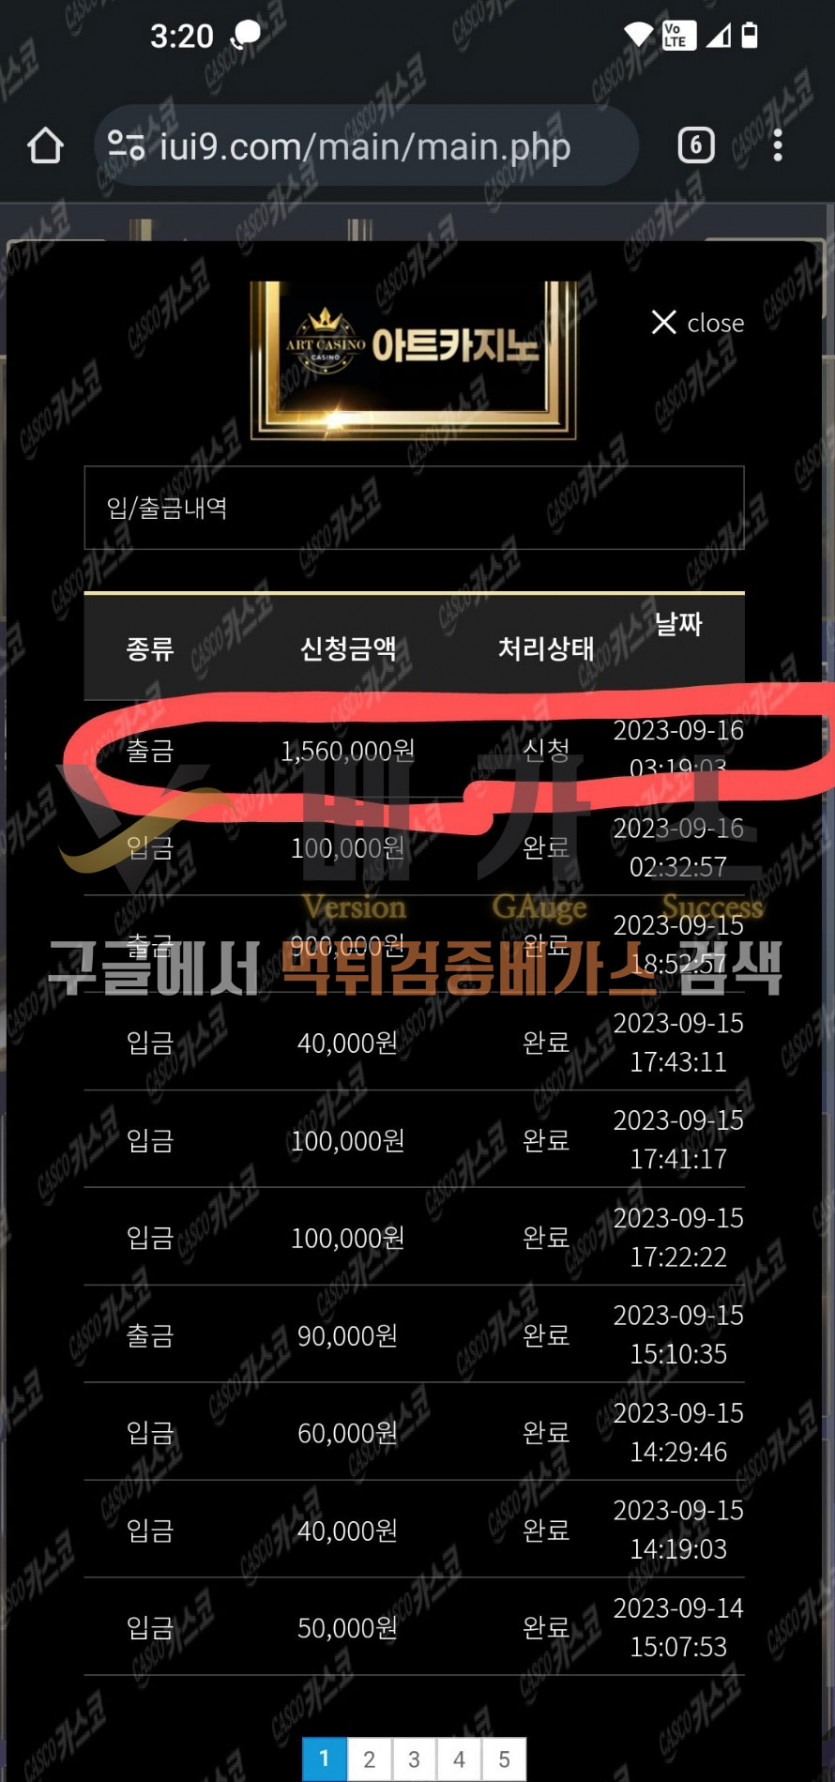 먹튀검증 완료 먹튀사이트-아트카지노[ahja3.com] 회원 156만원 출금신청내역 먹튀검증 증거자료5